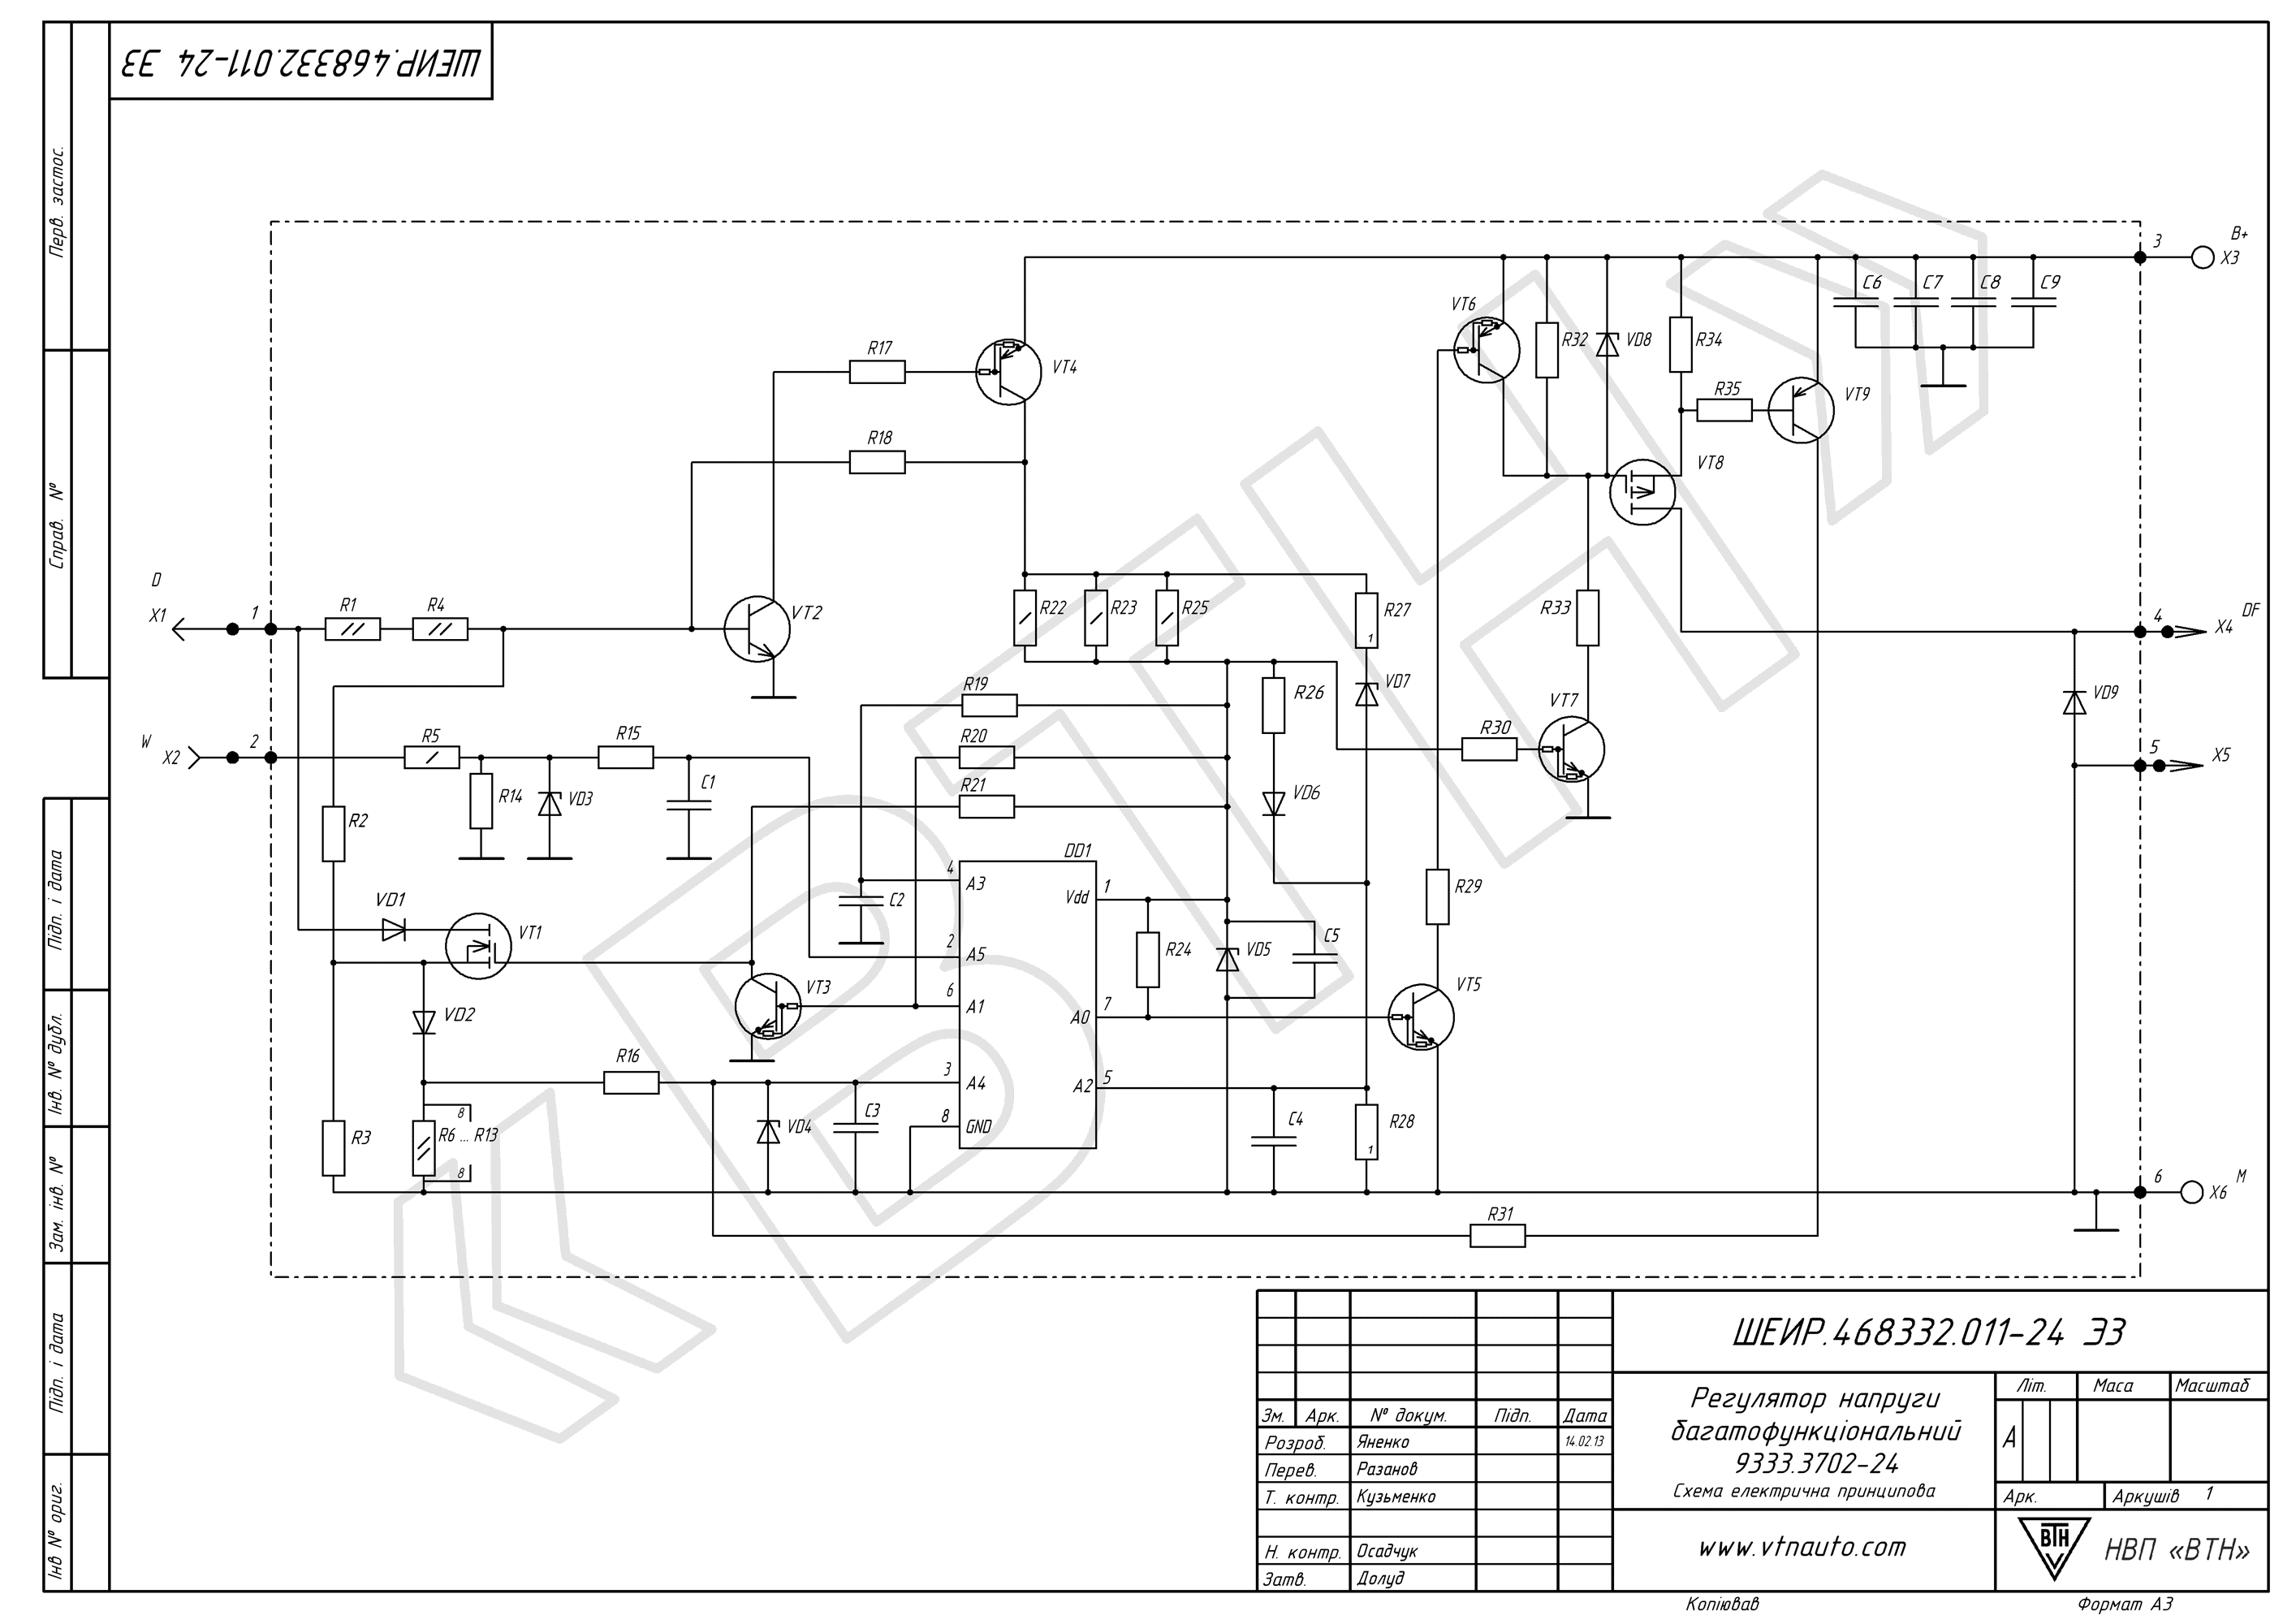 Circuit diagram of voltage regulator 9333.3702-24